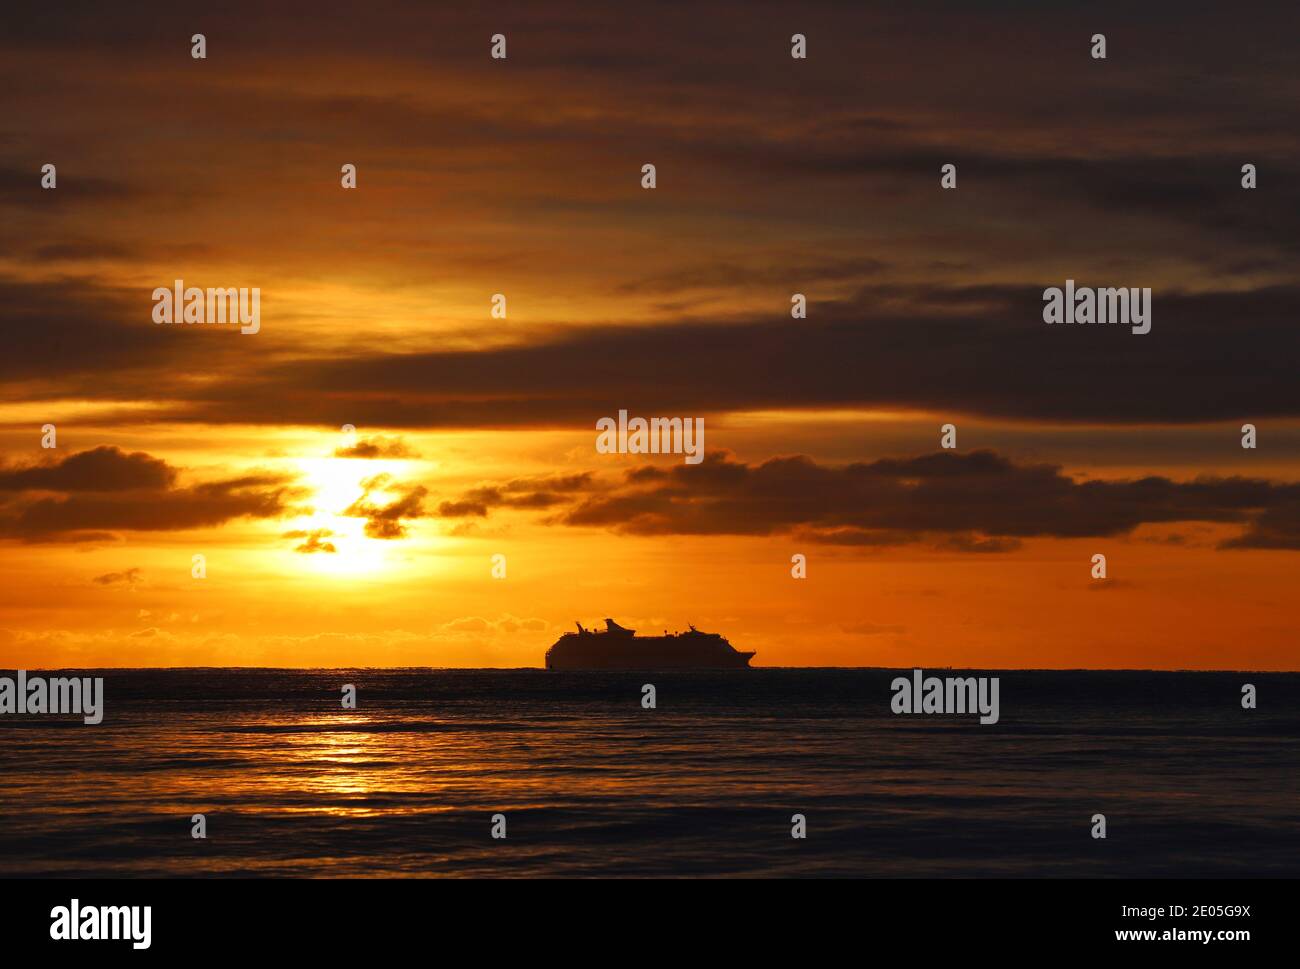 Una nave da crociera è silhoueted all'orizzonte contro un cielo di mattina di inverno riempito con il colore dorato caldo del sole che si erge scoppiando attraverso le nuvole. Foto Stock